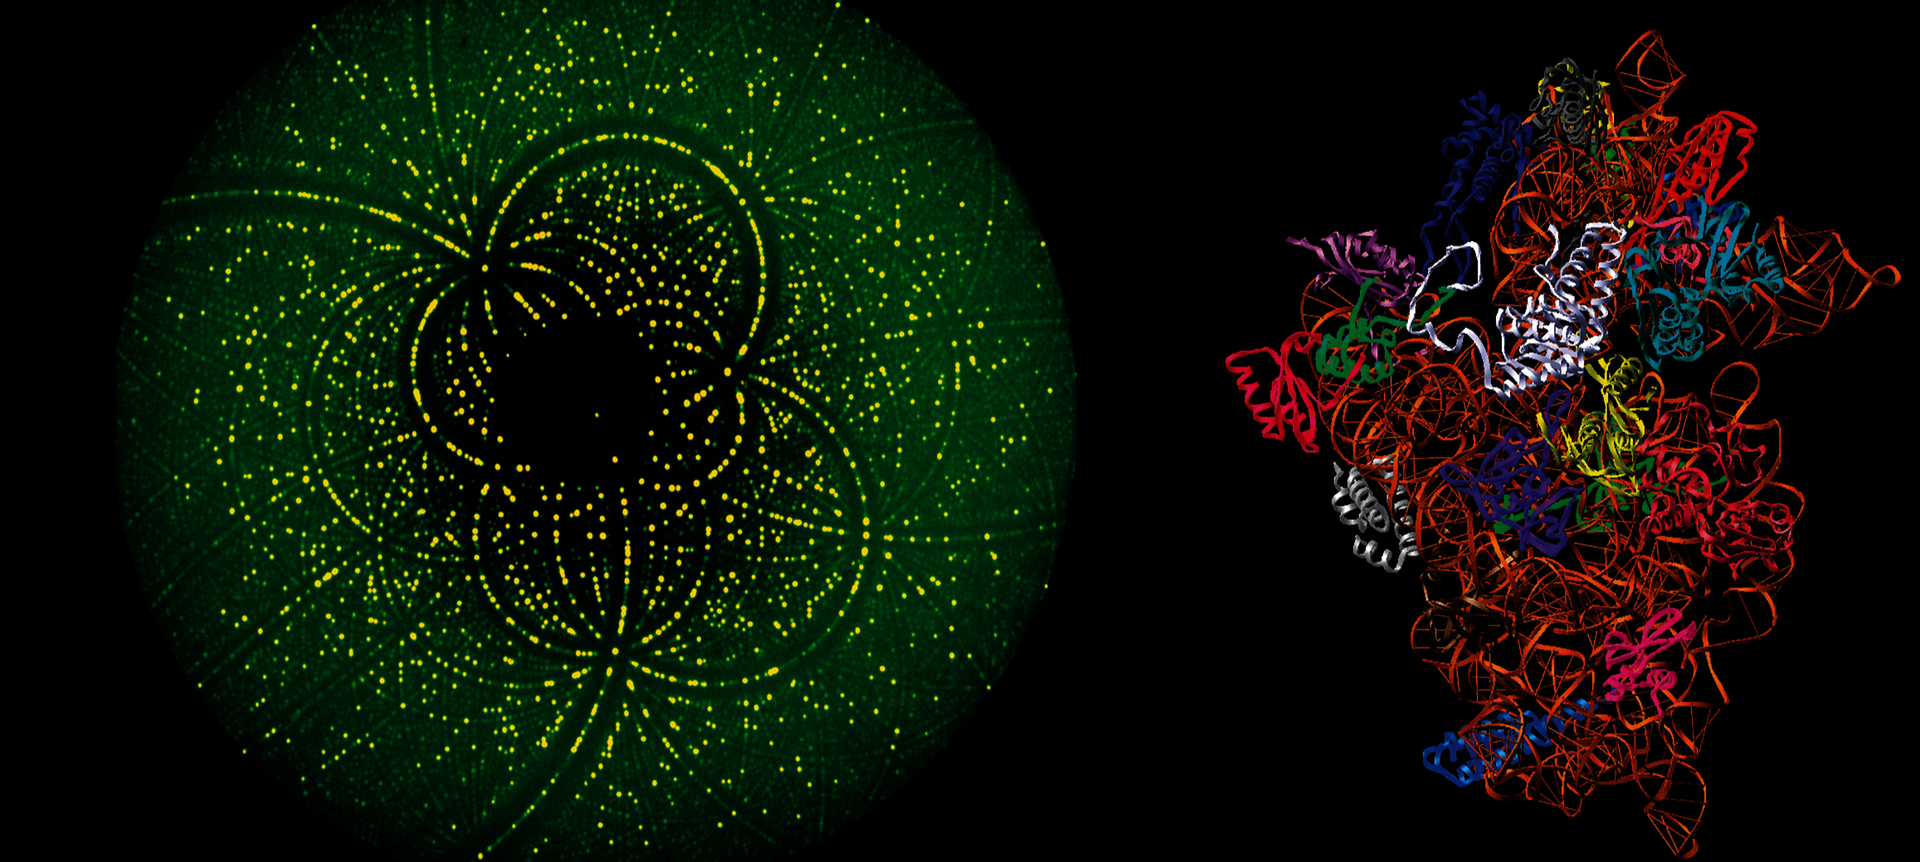 Links ein regelmäßiges Beugungsbild mit Kreisen und Punten, rechts eine Molekülstruktur.